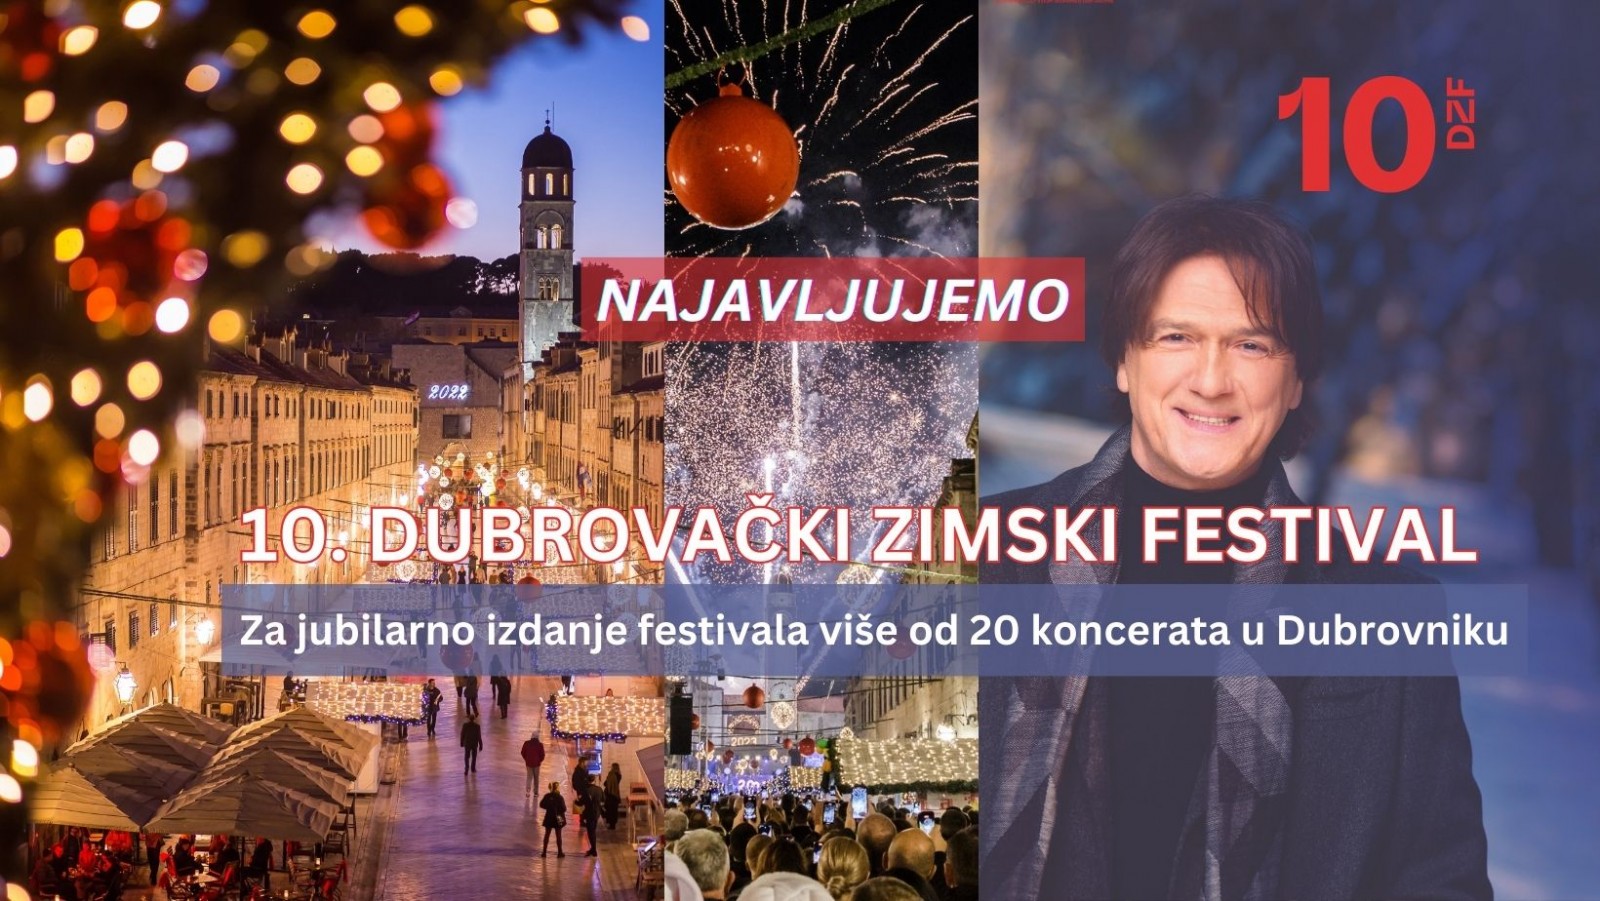 NAJAVLJUJEMO 10. DUBROVAČKI ZIMSKI FESTIVAL  Za jubilarno izdanje festivala više od 20 koncerata u Dubrovniku